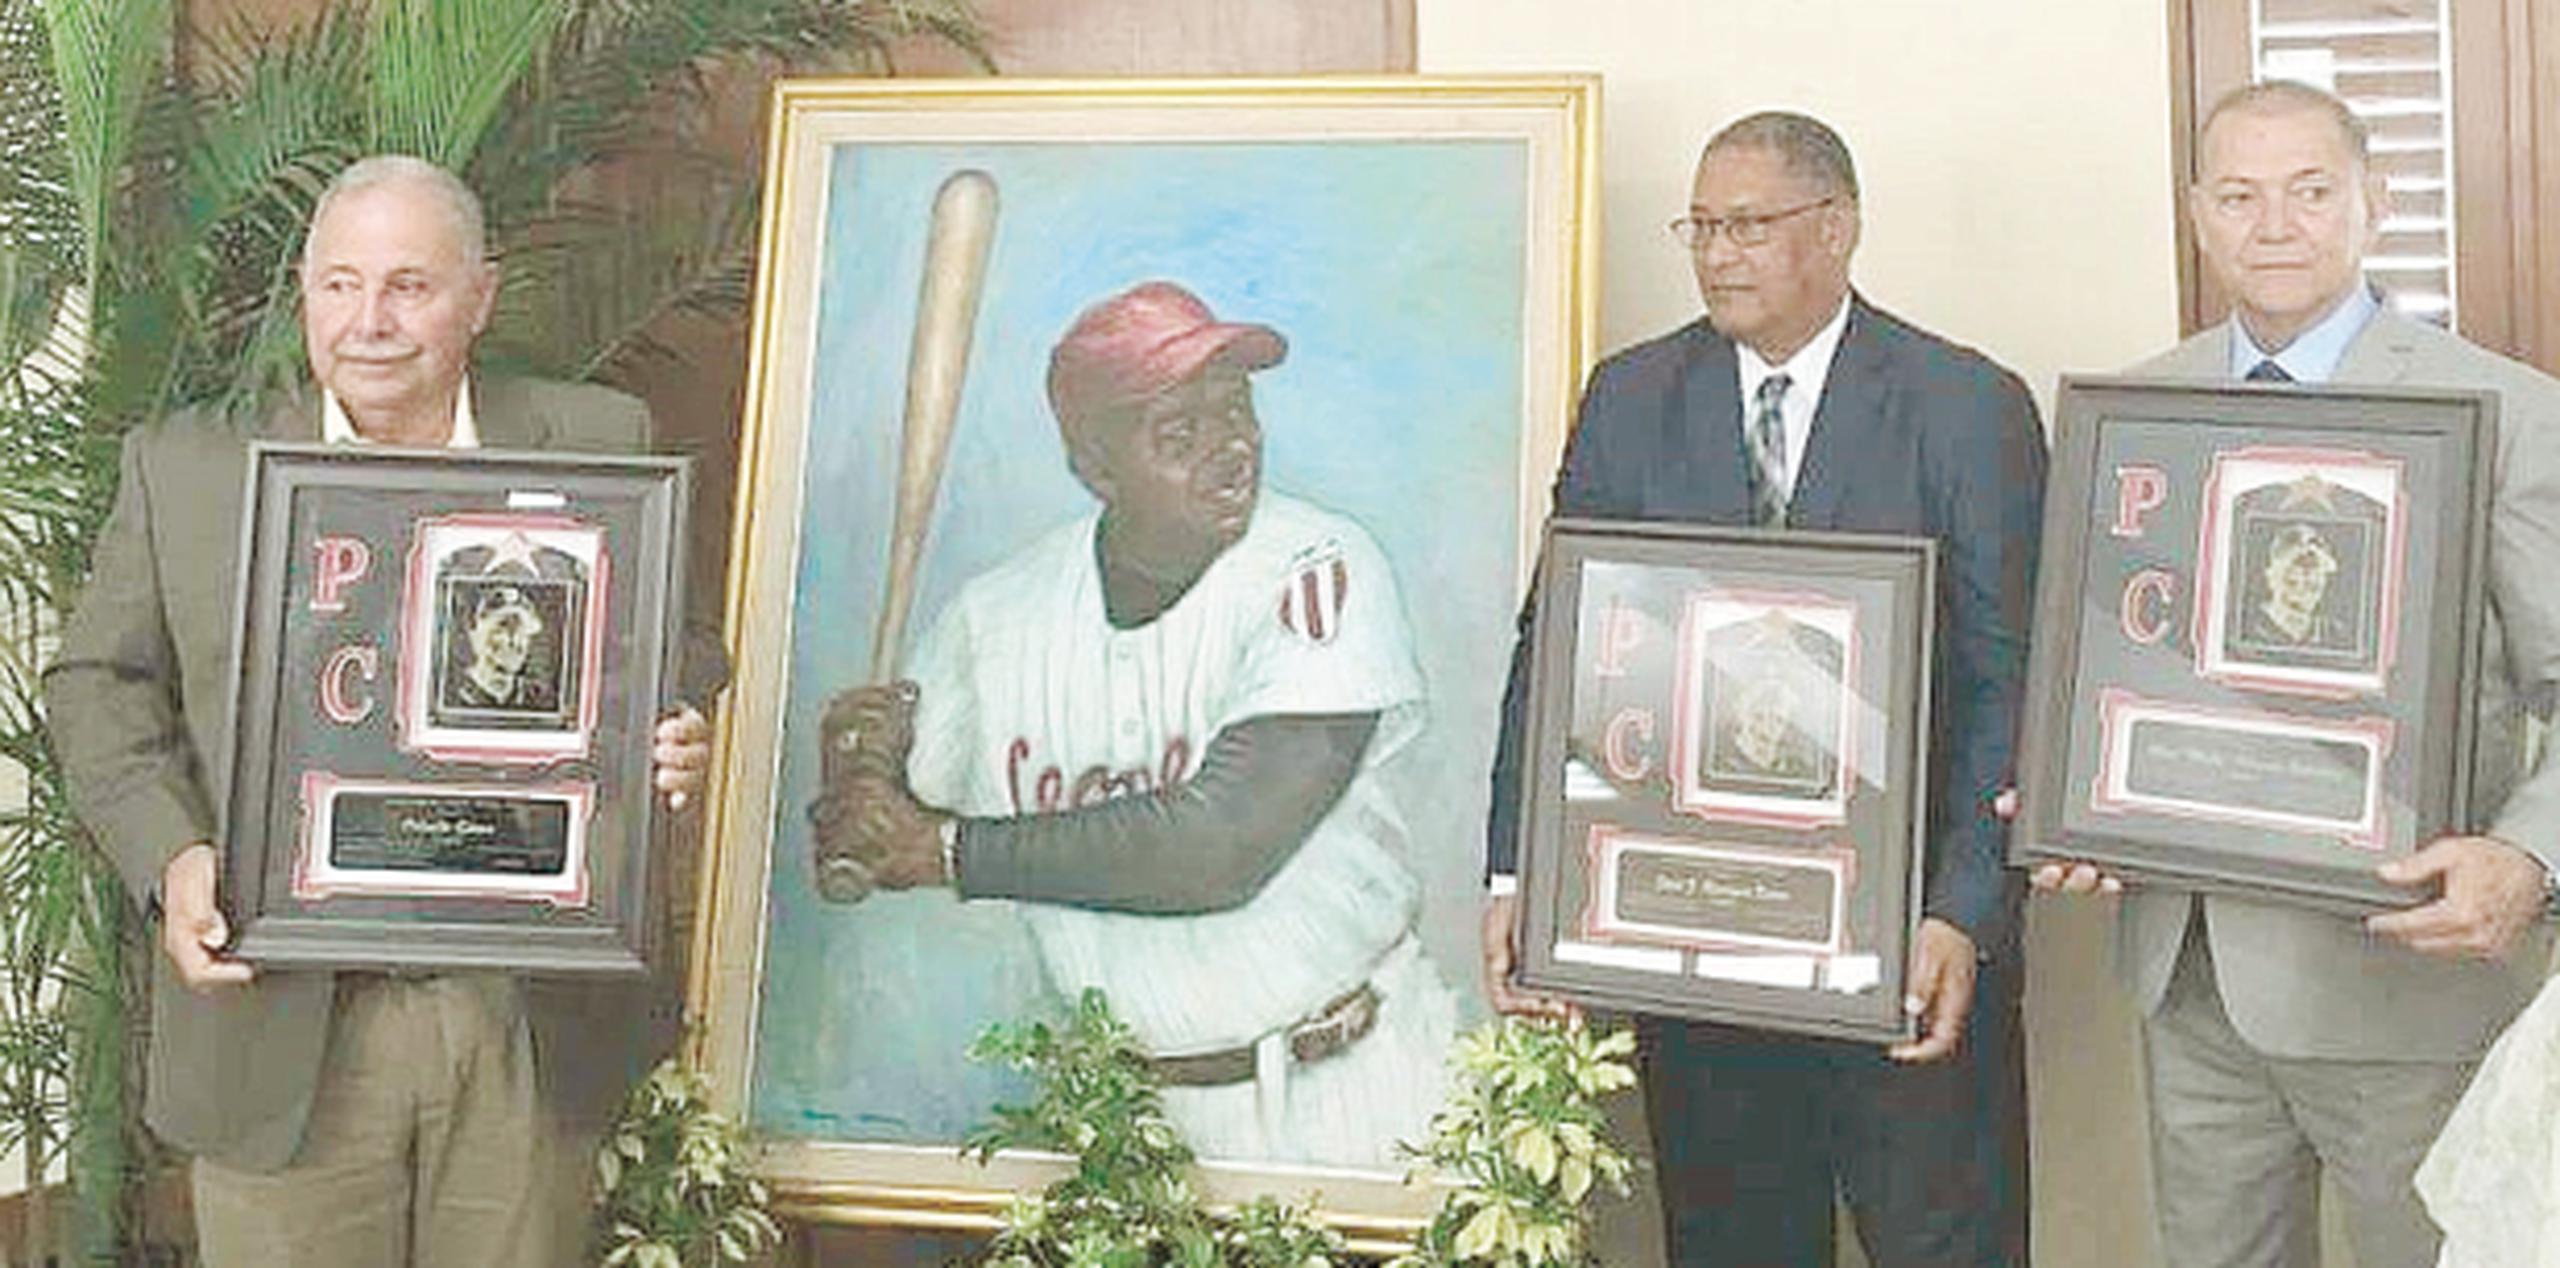 La Séptima Edición del Premio “Pancho” Coímbre, otorgado a jugadores y dirigentes de alto rendimiento en el Béisbol Profesional de Puerto Rico. (Archivo)